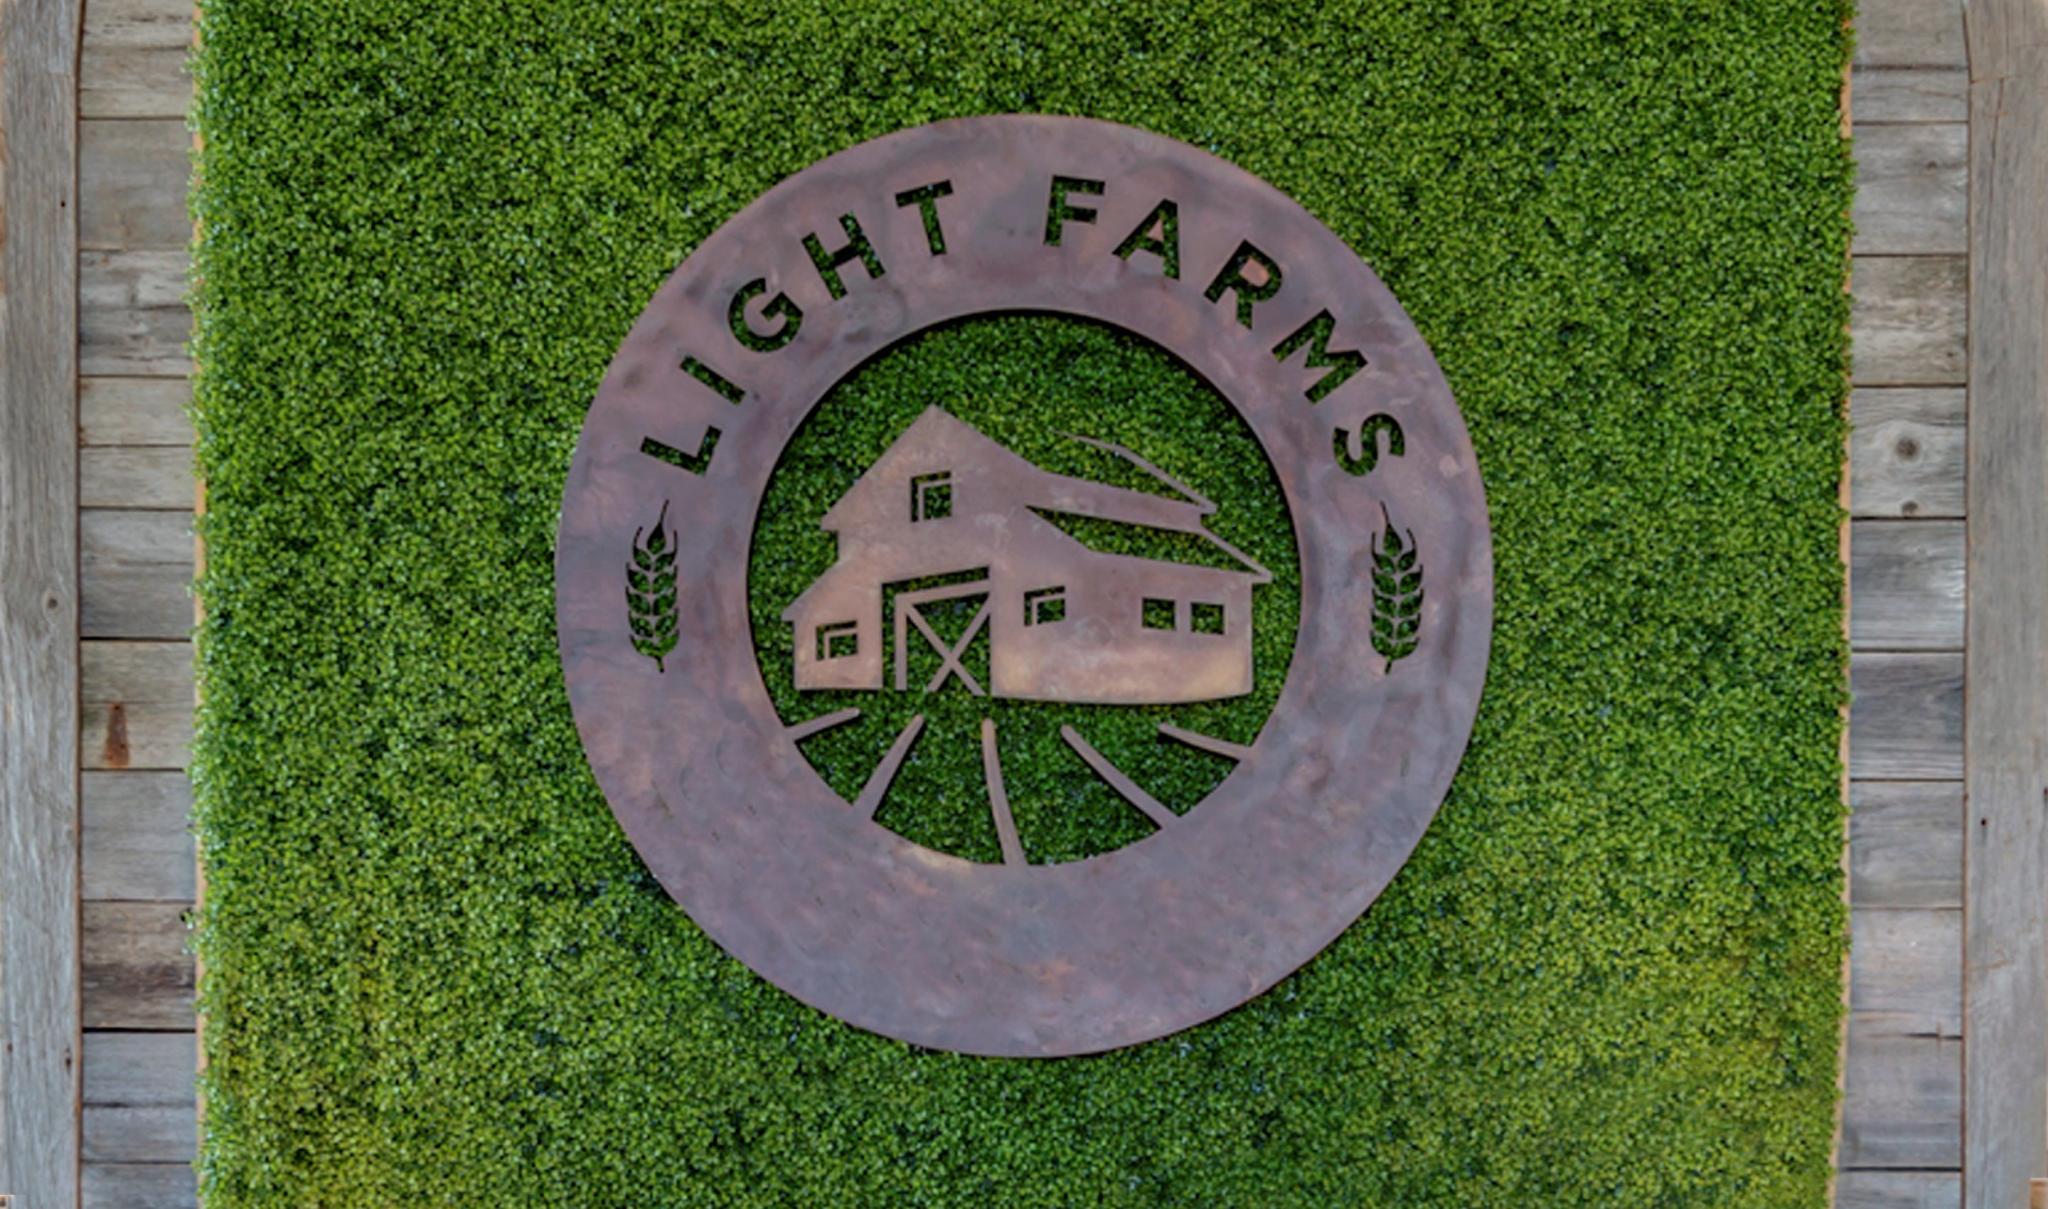 Light Farms, Celina Texas